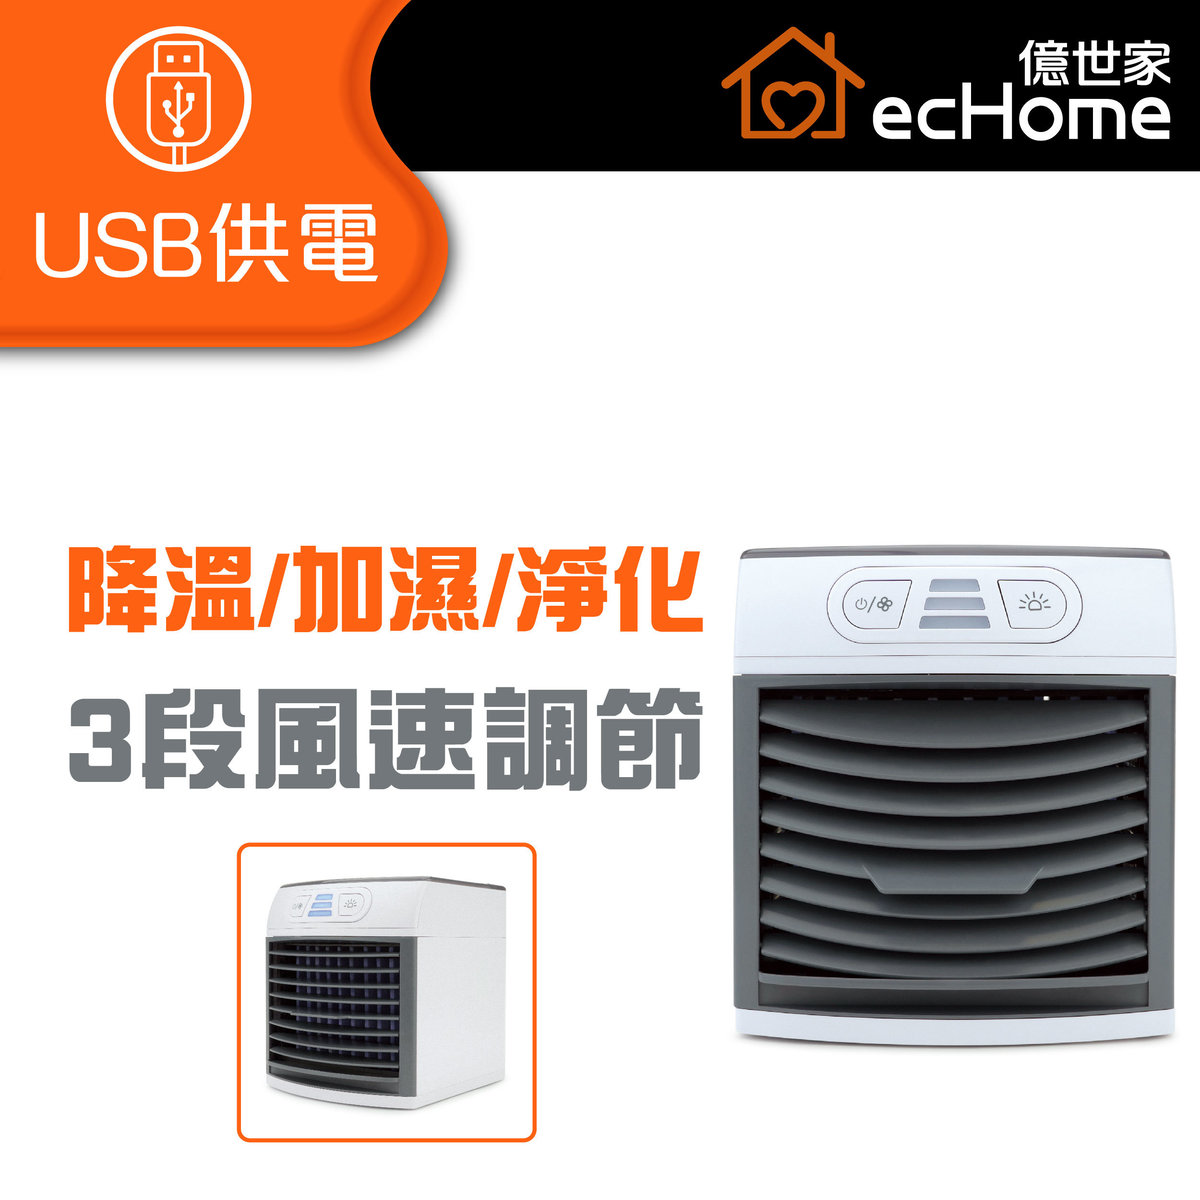 USB超聲波淨化水冷風機 - AC788 | 風扇 | 涼風機 | 迷你冷風機 | 迷你電風扇